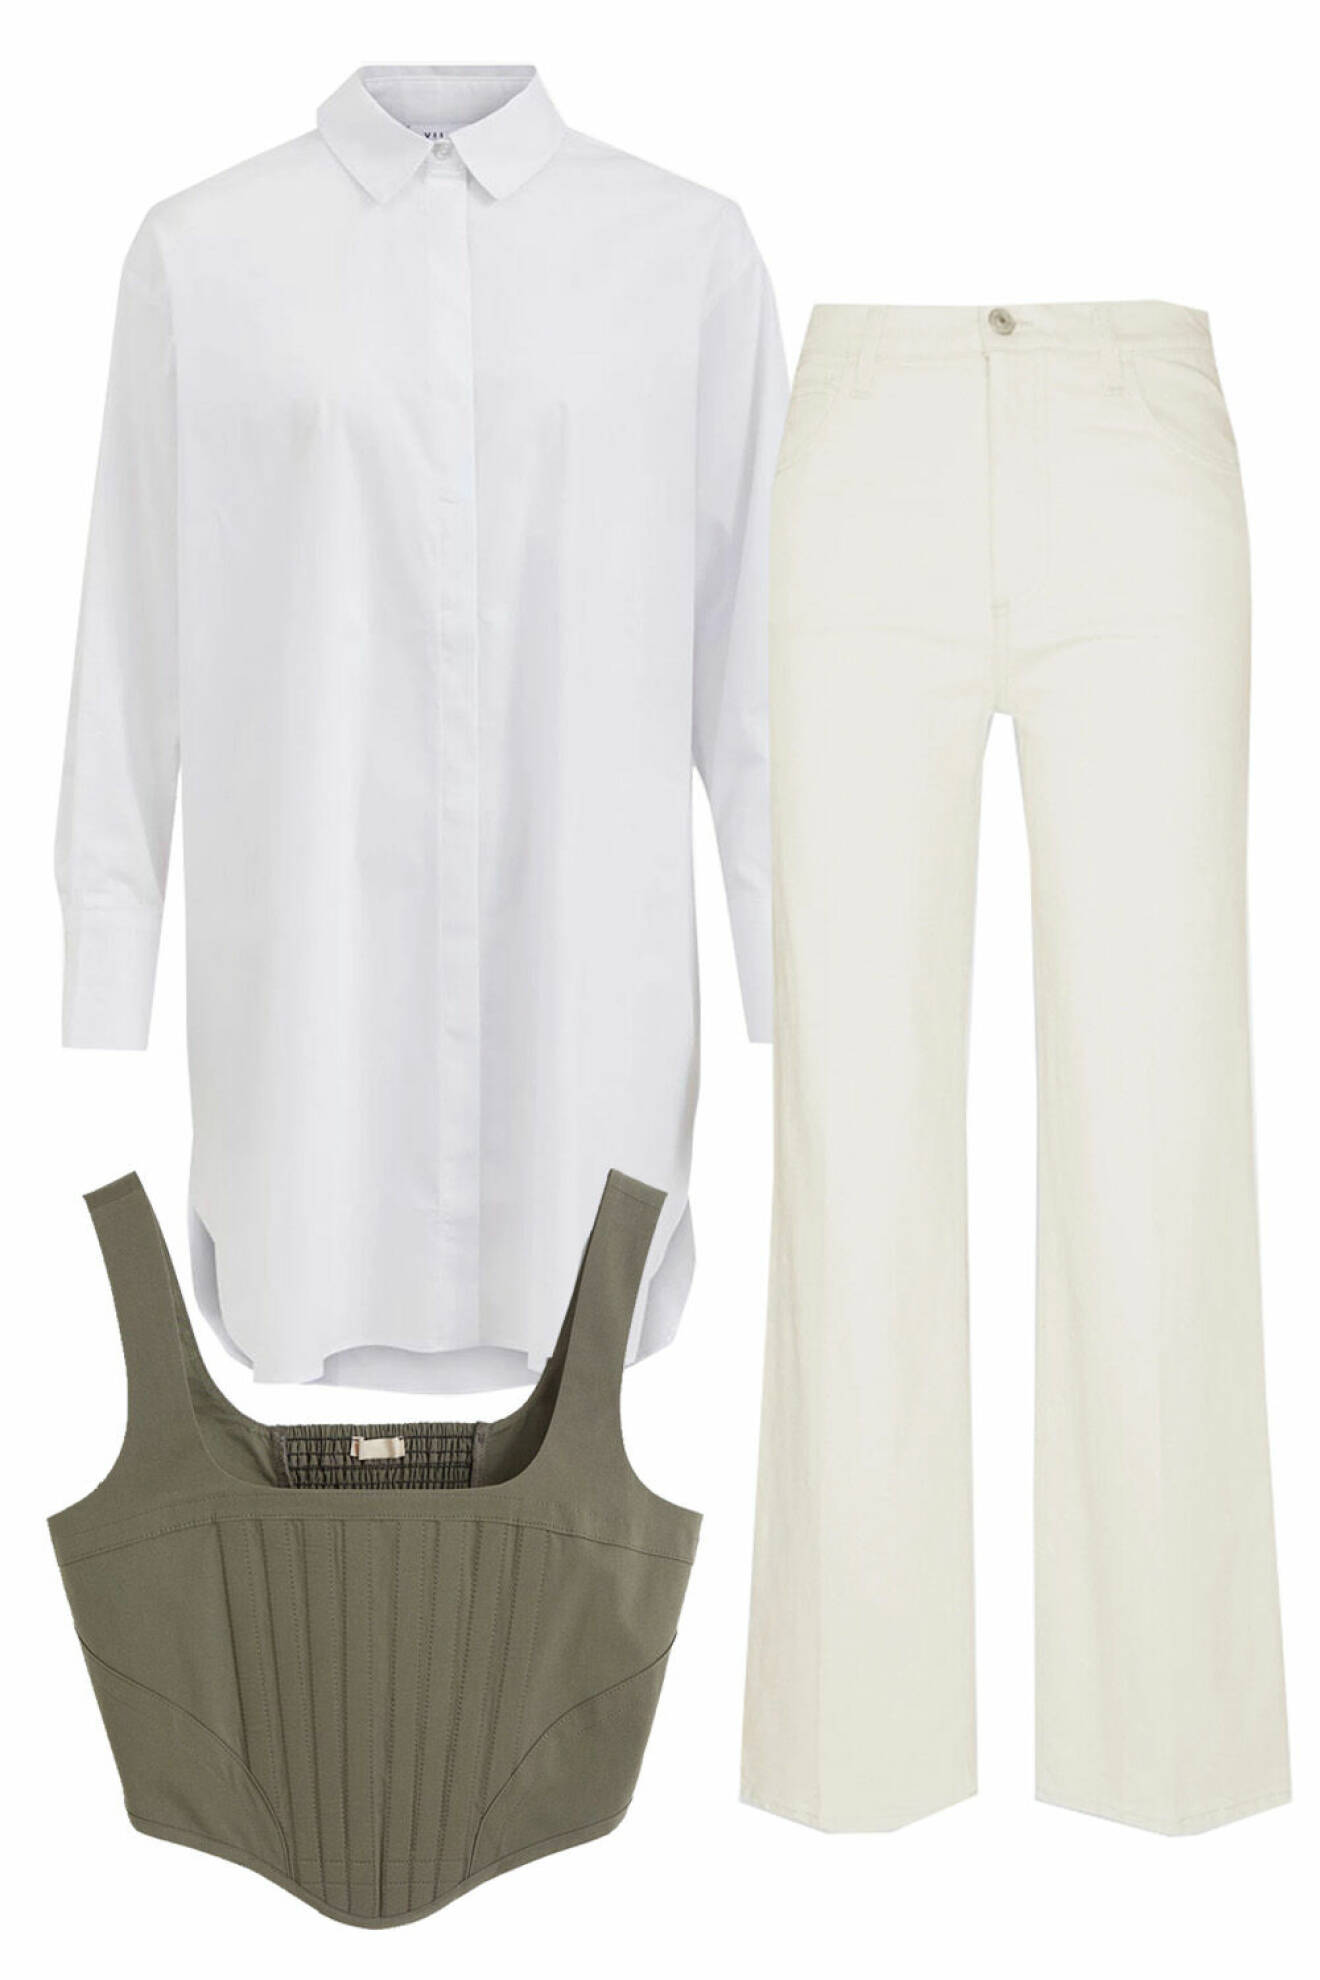 outfit med vit skjorta, vita jeans och grön korsett